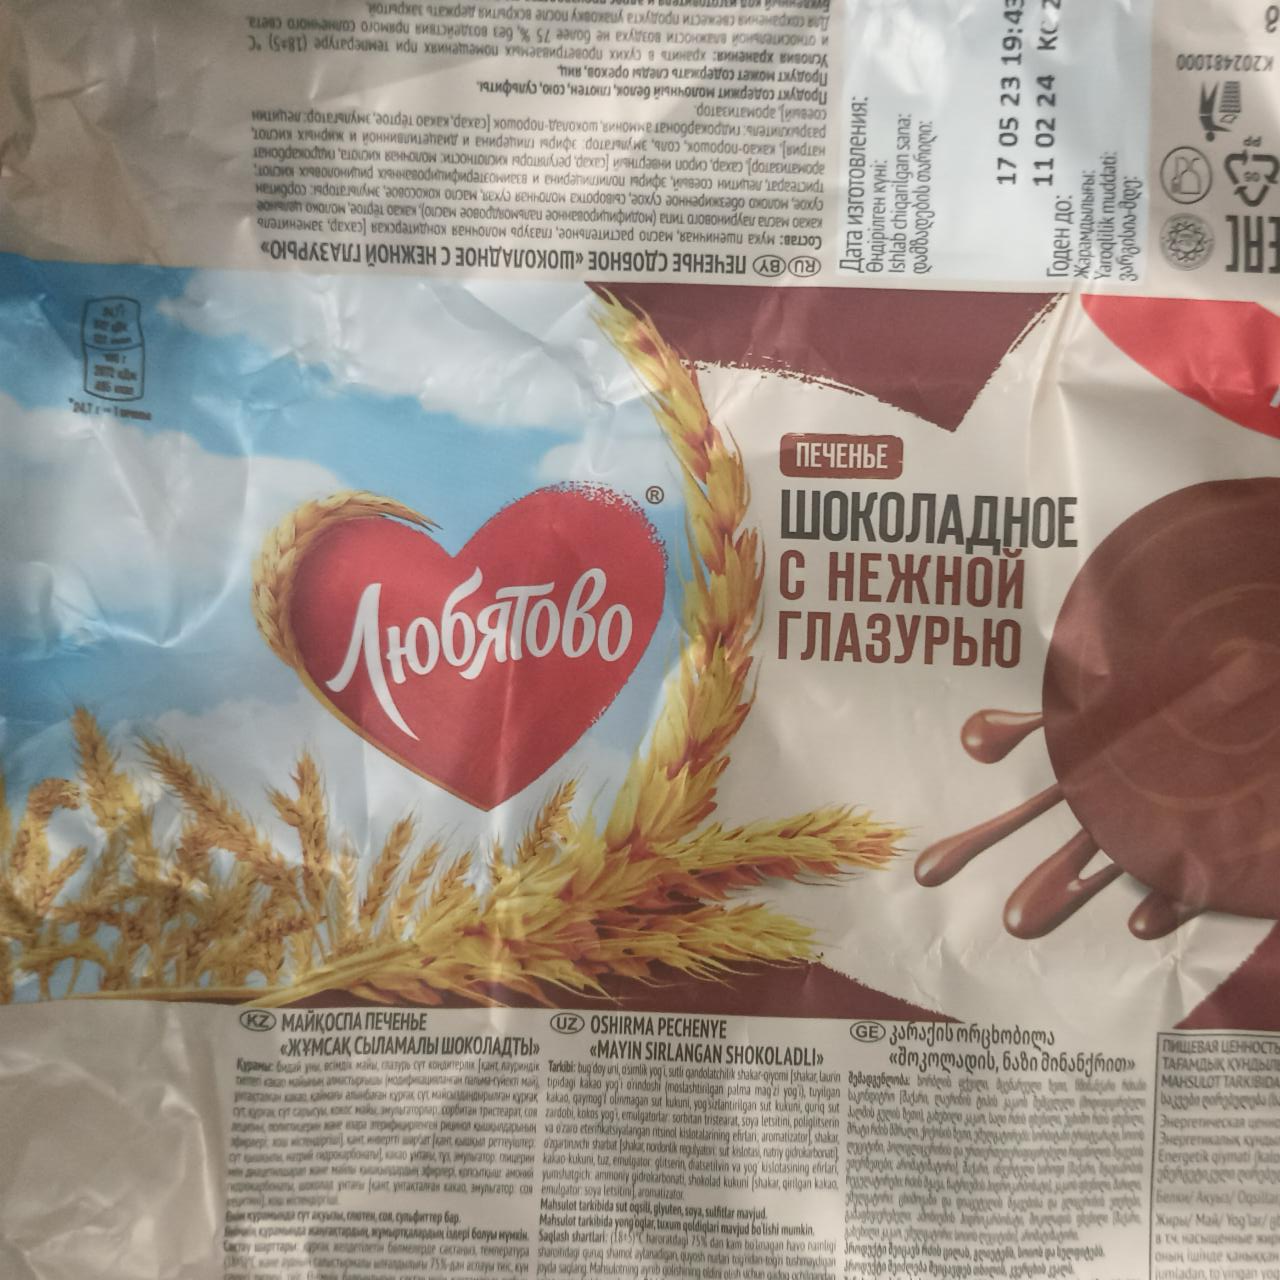 Фото - Печенье шоколадное с нежной глазурью Любятово